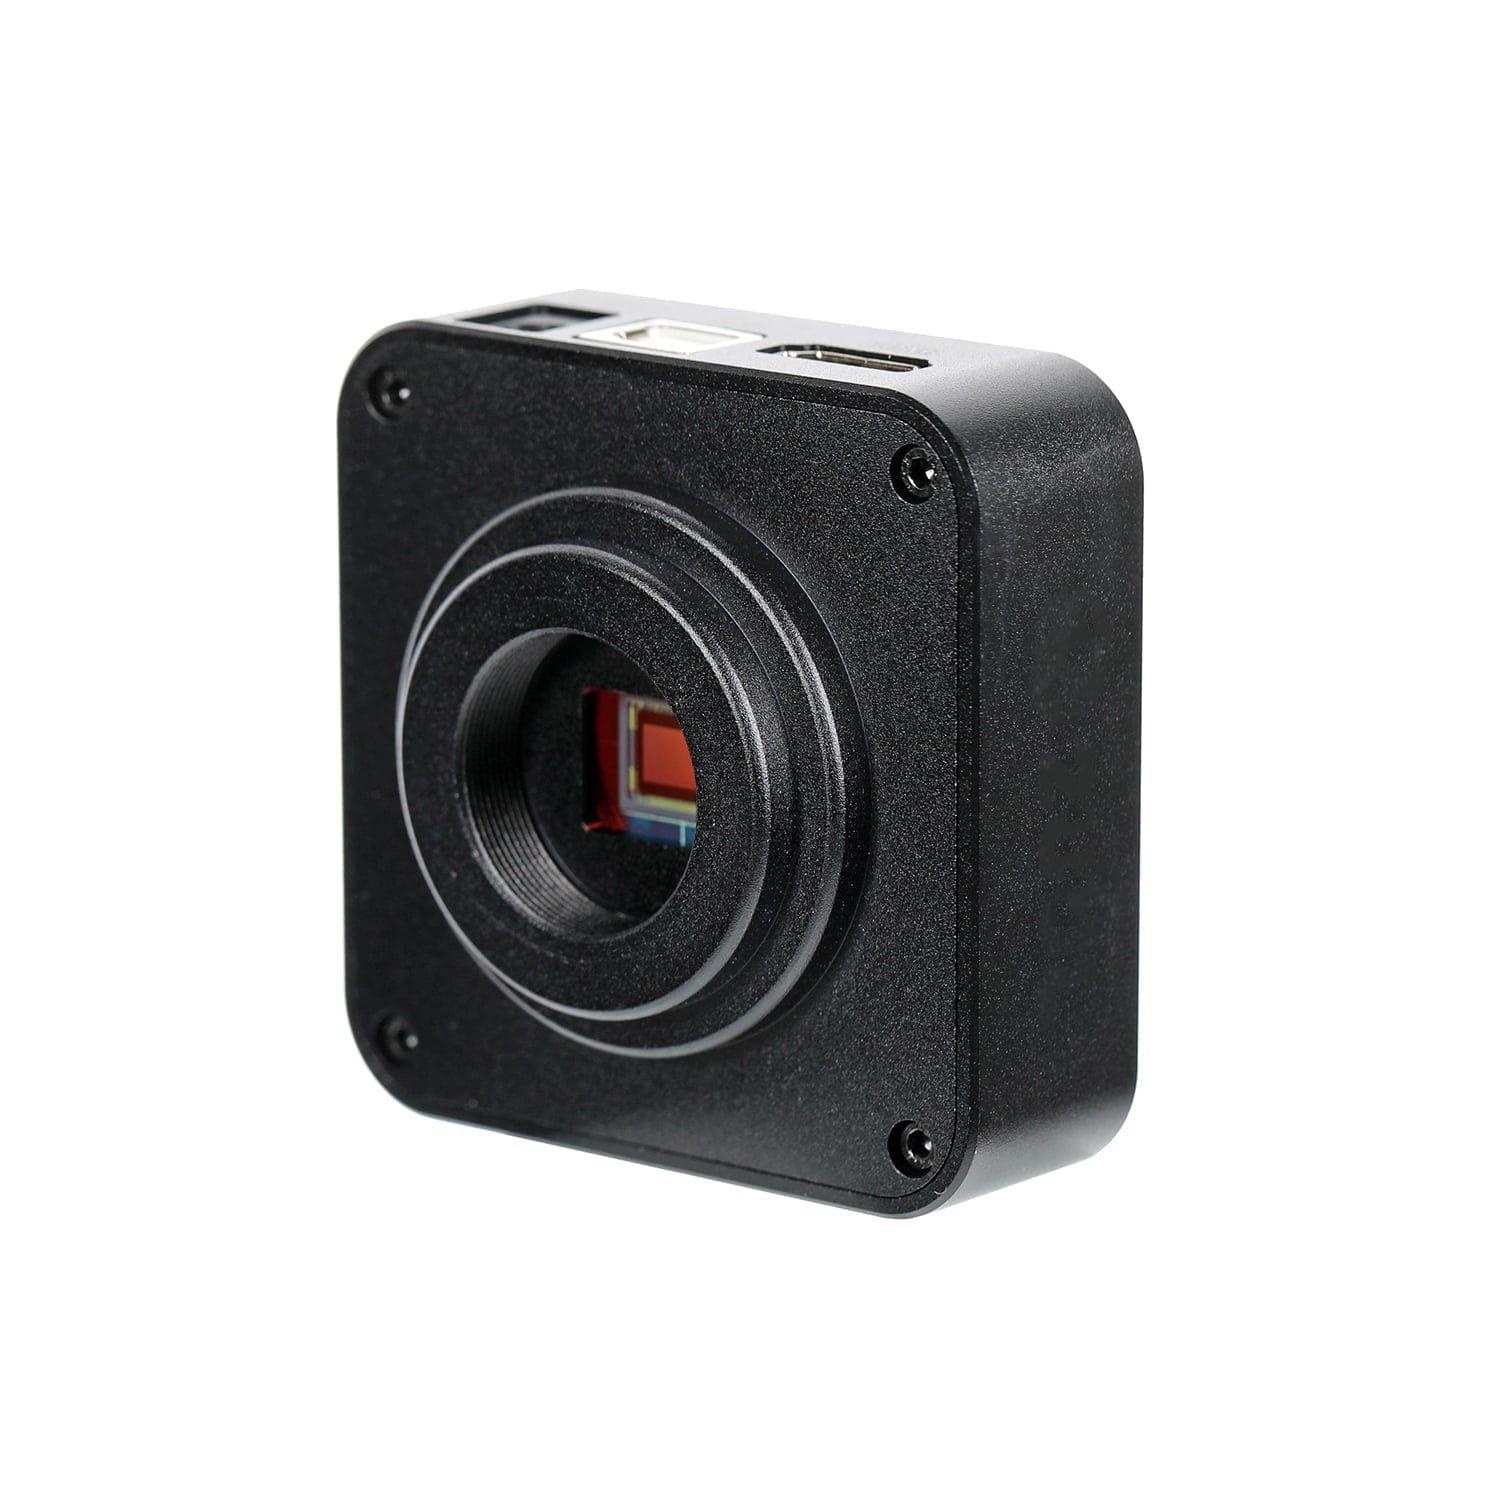 Microscope camera 38MP HDMI USB 2.0